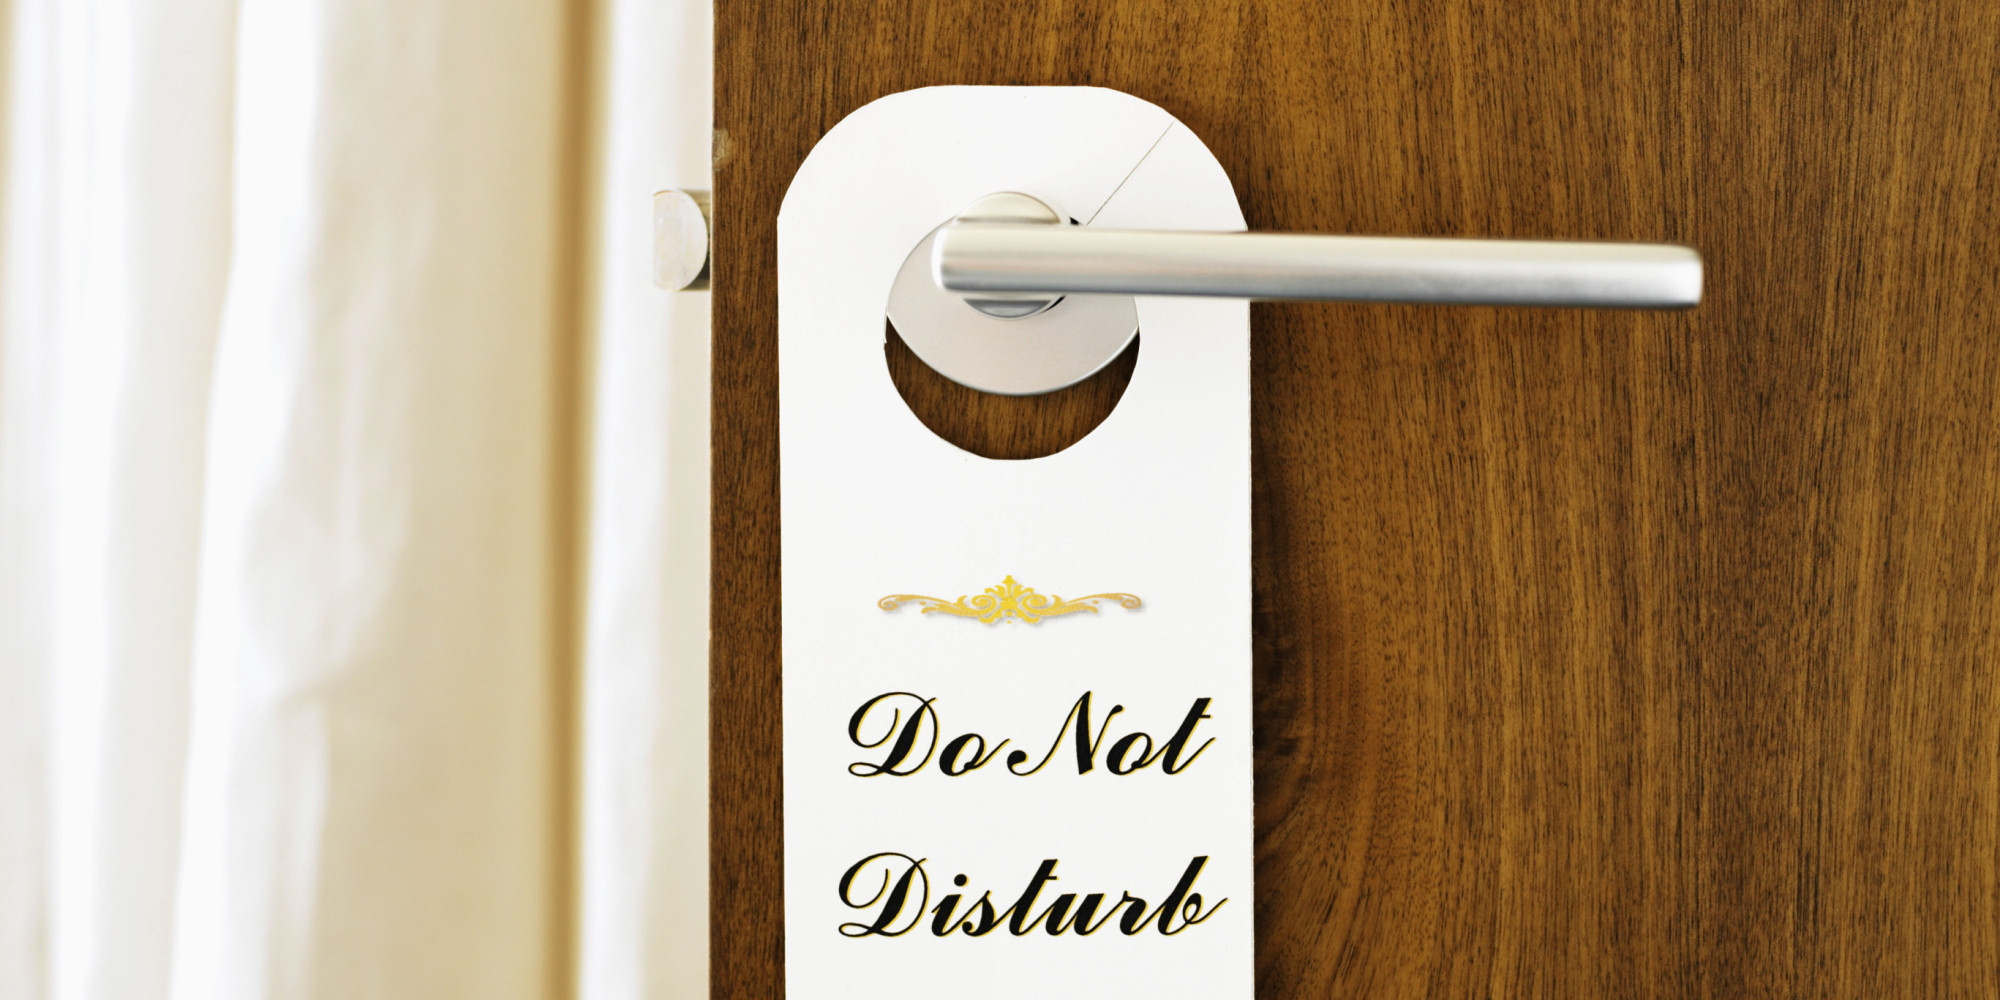 'Do Not Disturb' sign on door handle